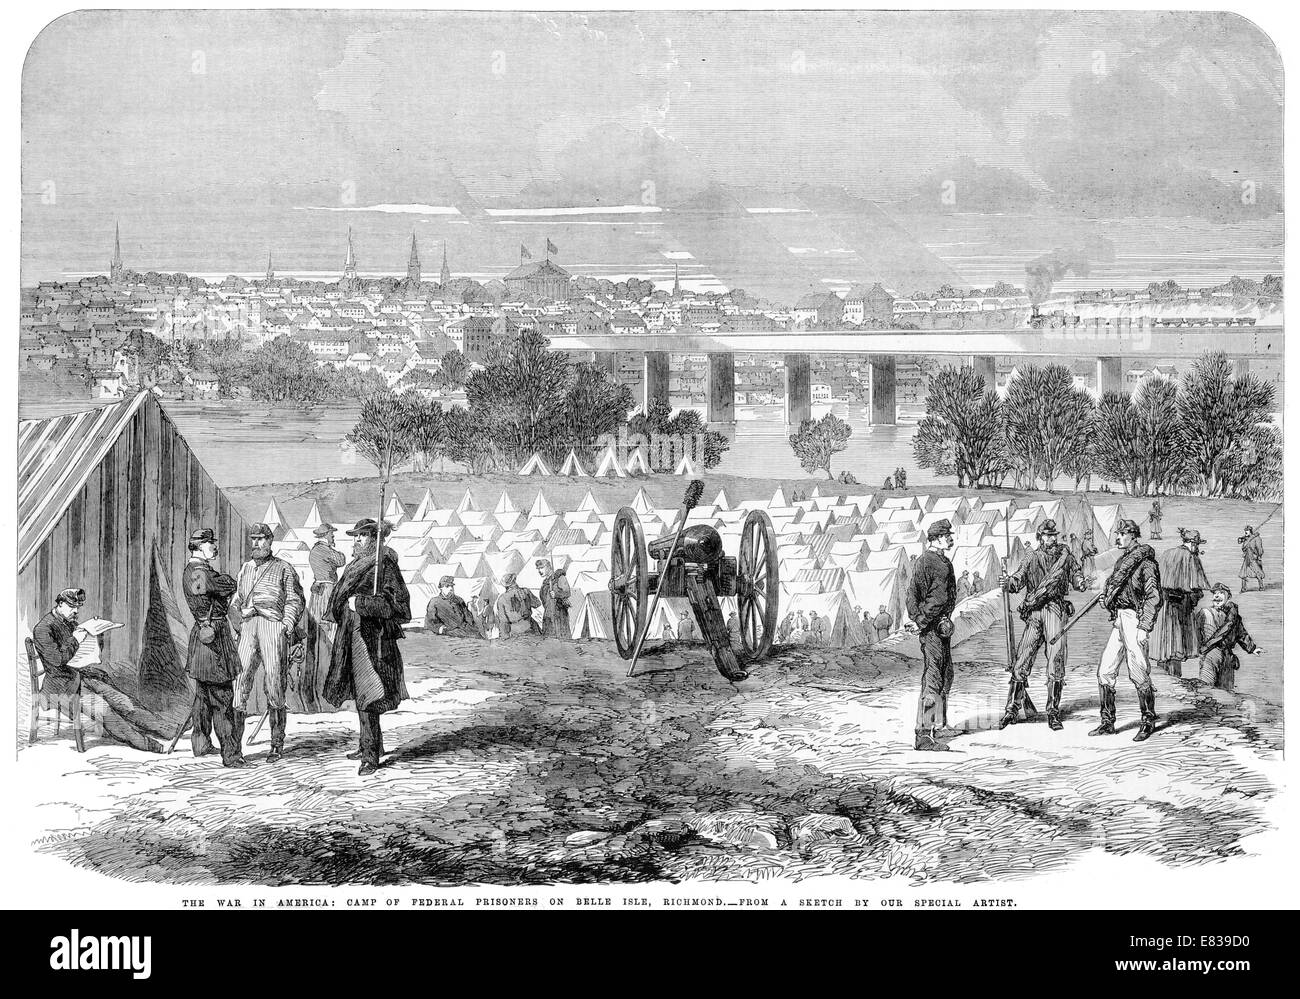 Guerra Civil americana campamento de prisioneros federales en Belle Isle Richmond 1864 Foto de stock